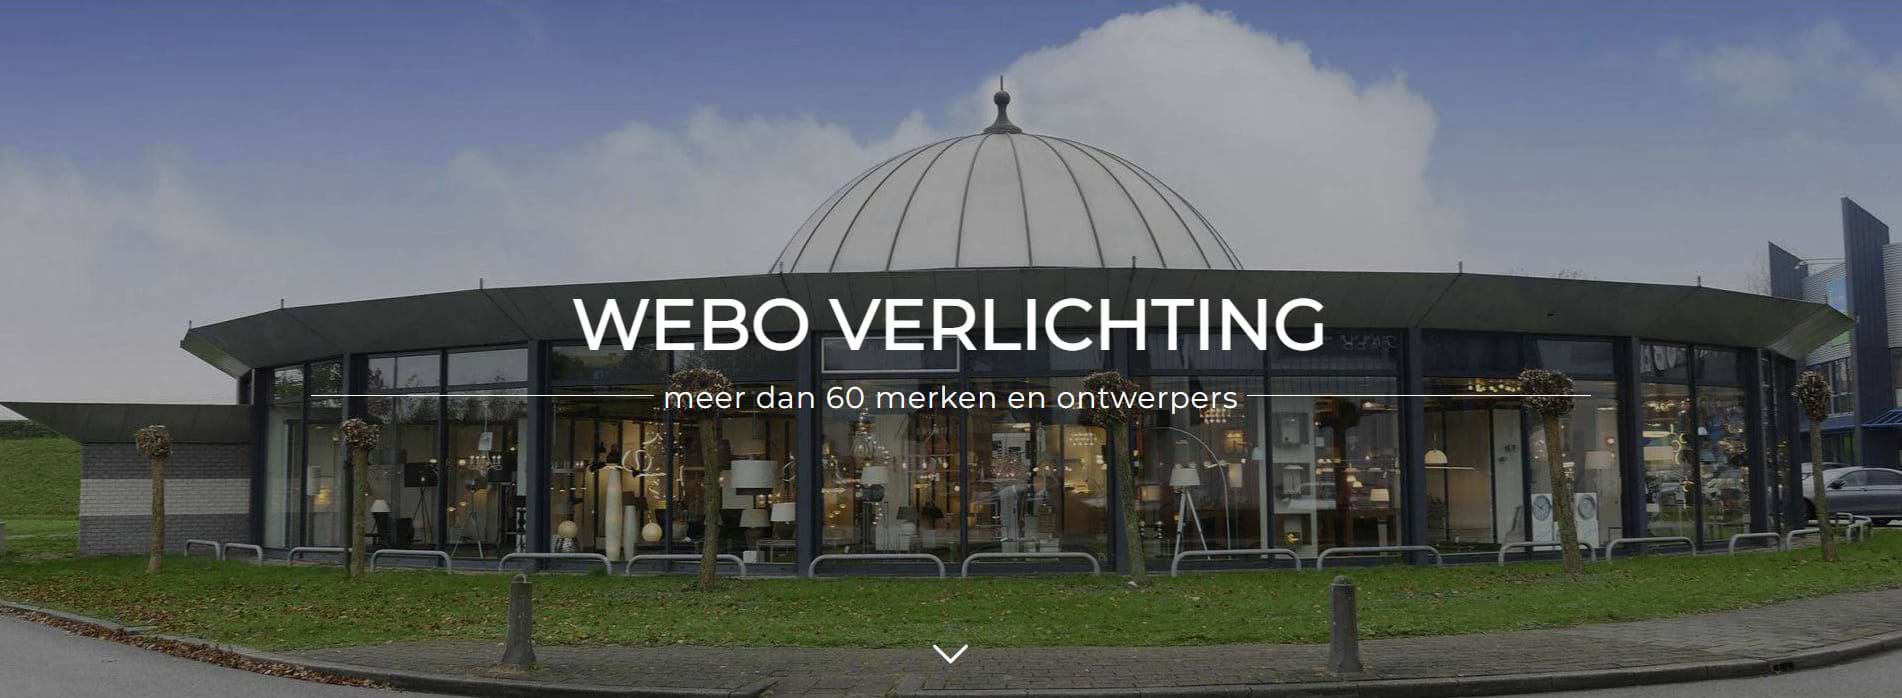 Betrokken Doe een poging Opblazen Webo Verlichting - lampen showroom & lampen online - Nederlands grootste  verlichtingsshowroom